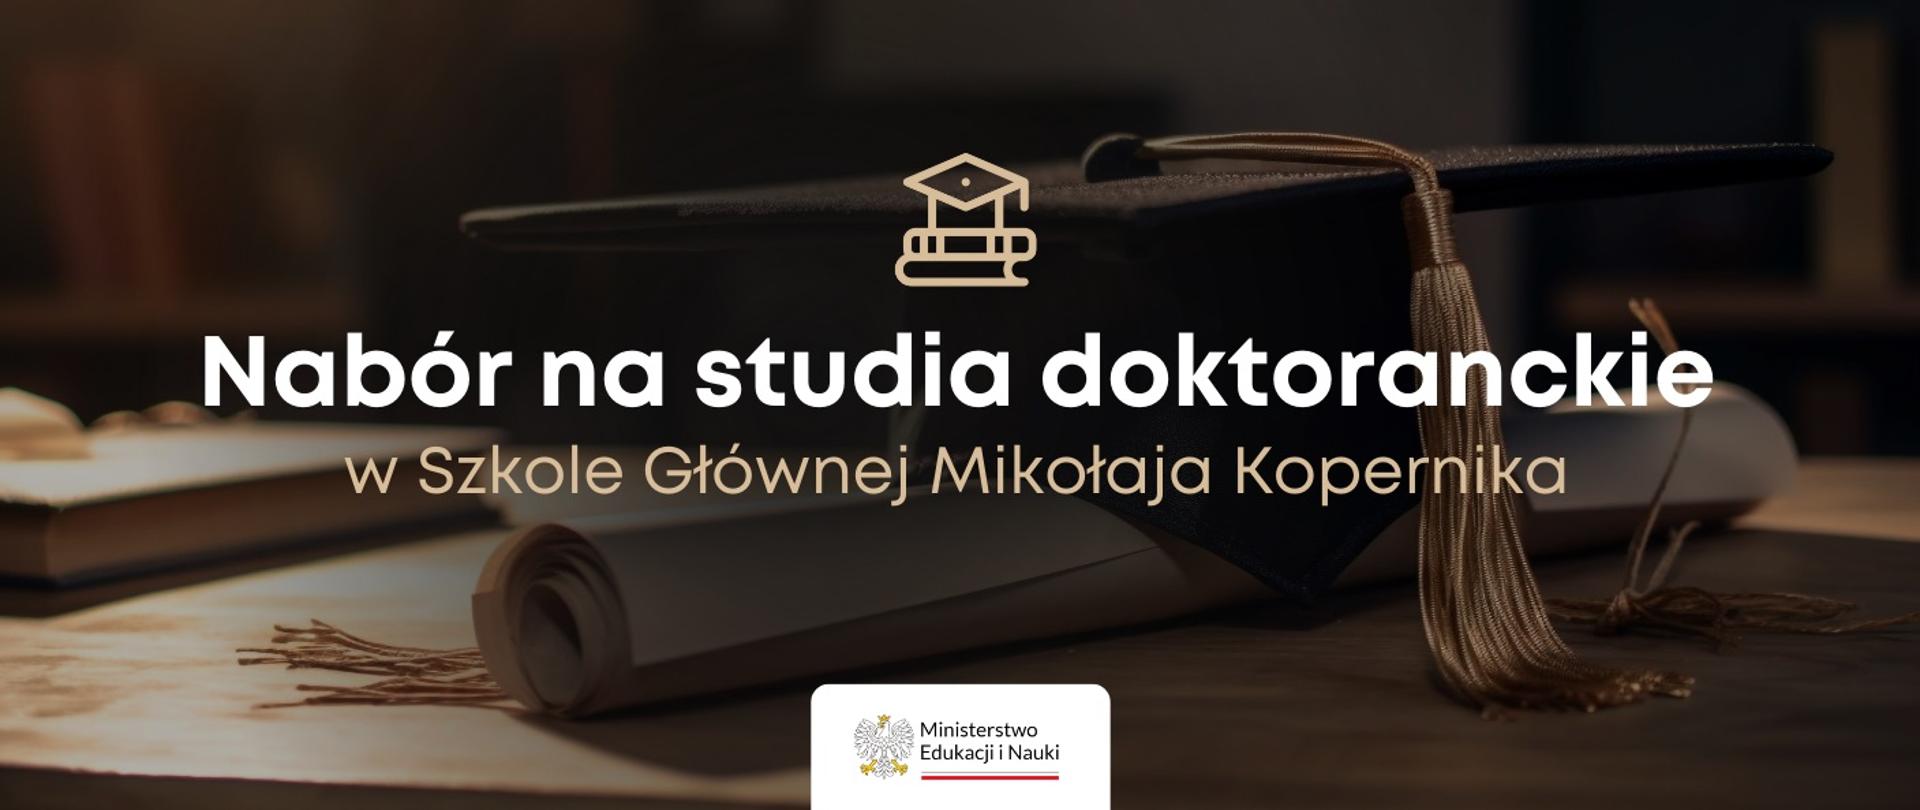 Grafika - zwinięty dyplom, studencka czapka i napis Nabór na studia doktoranckie w Szkole Głównej Mikołaja Kopernika.